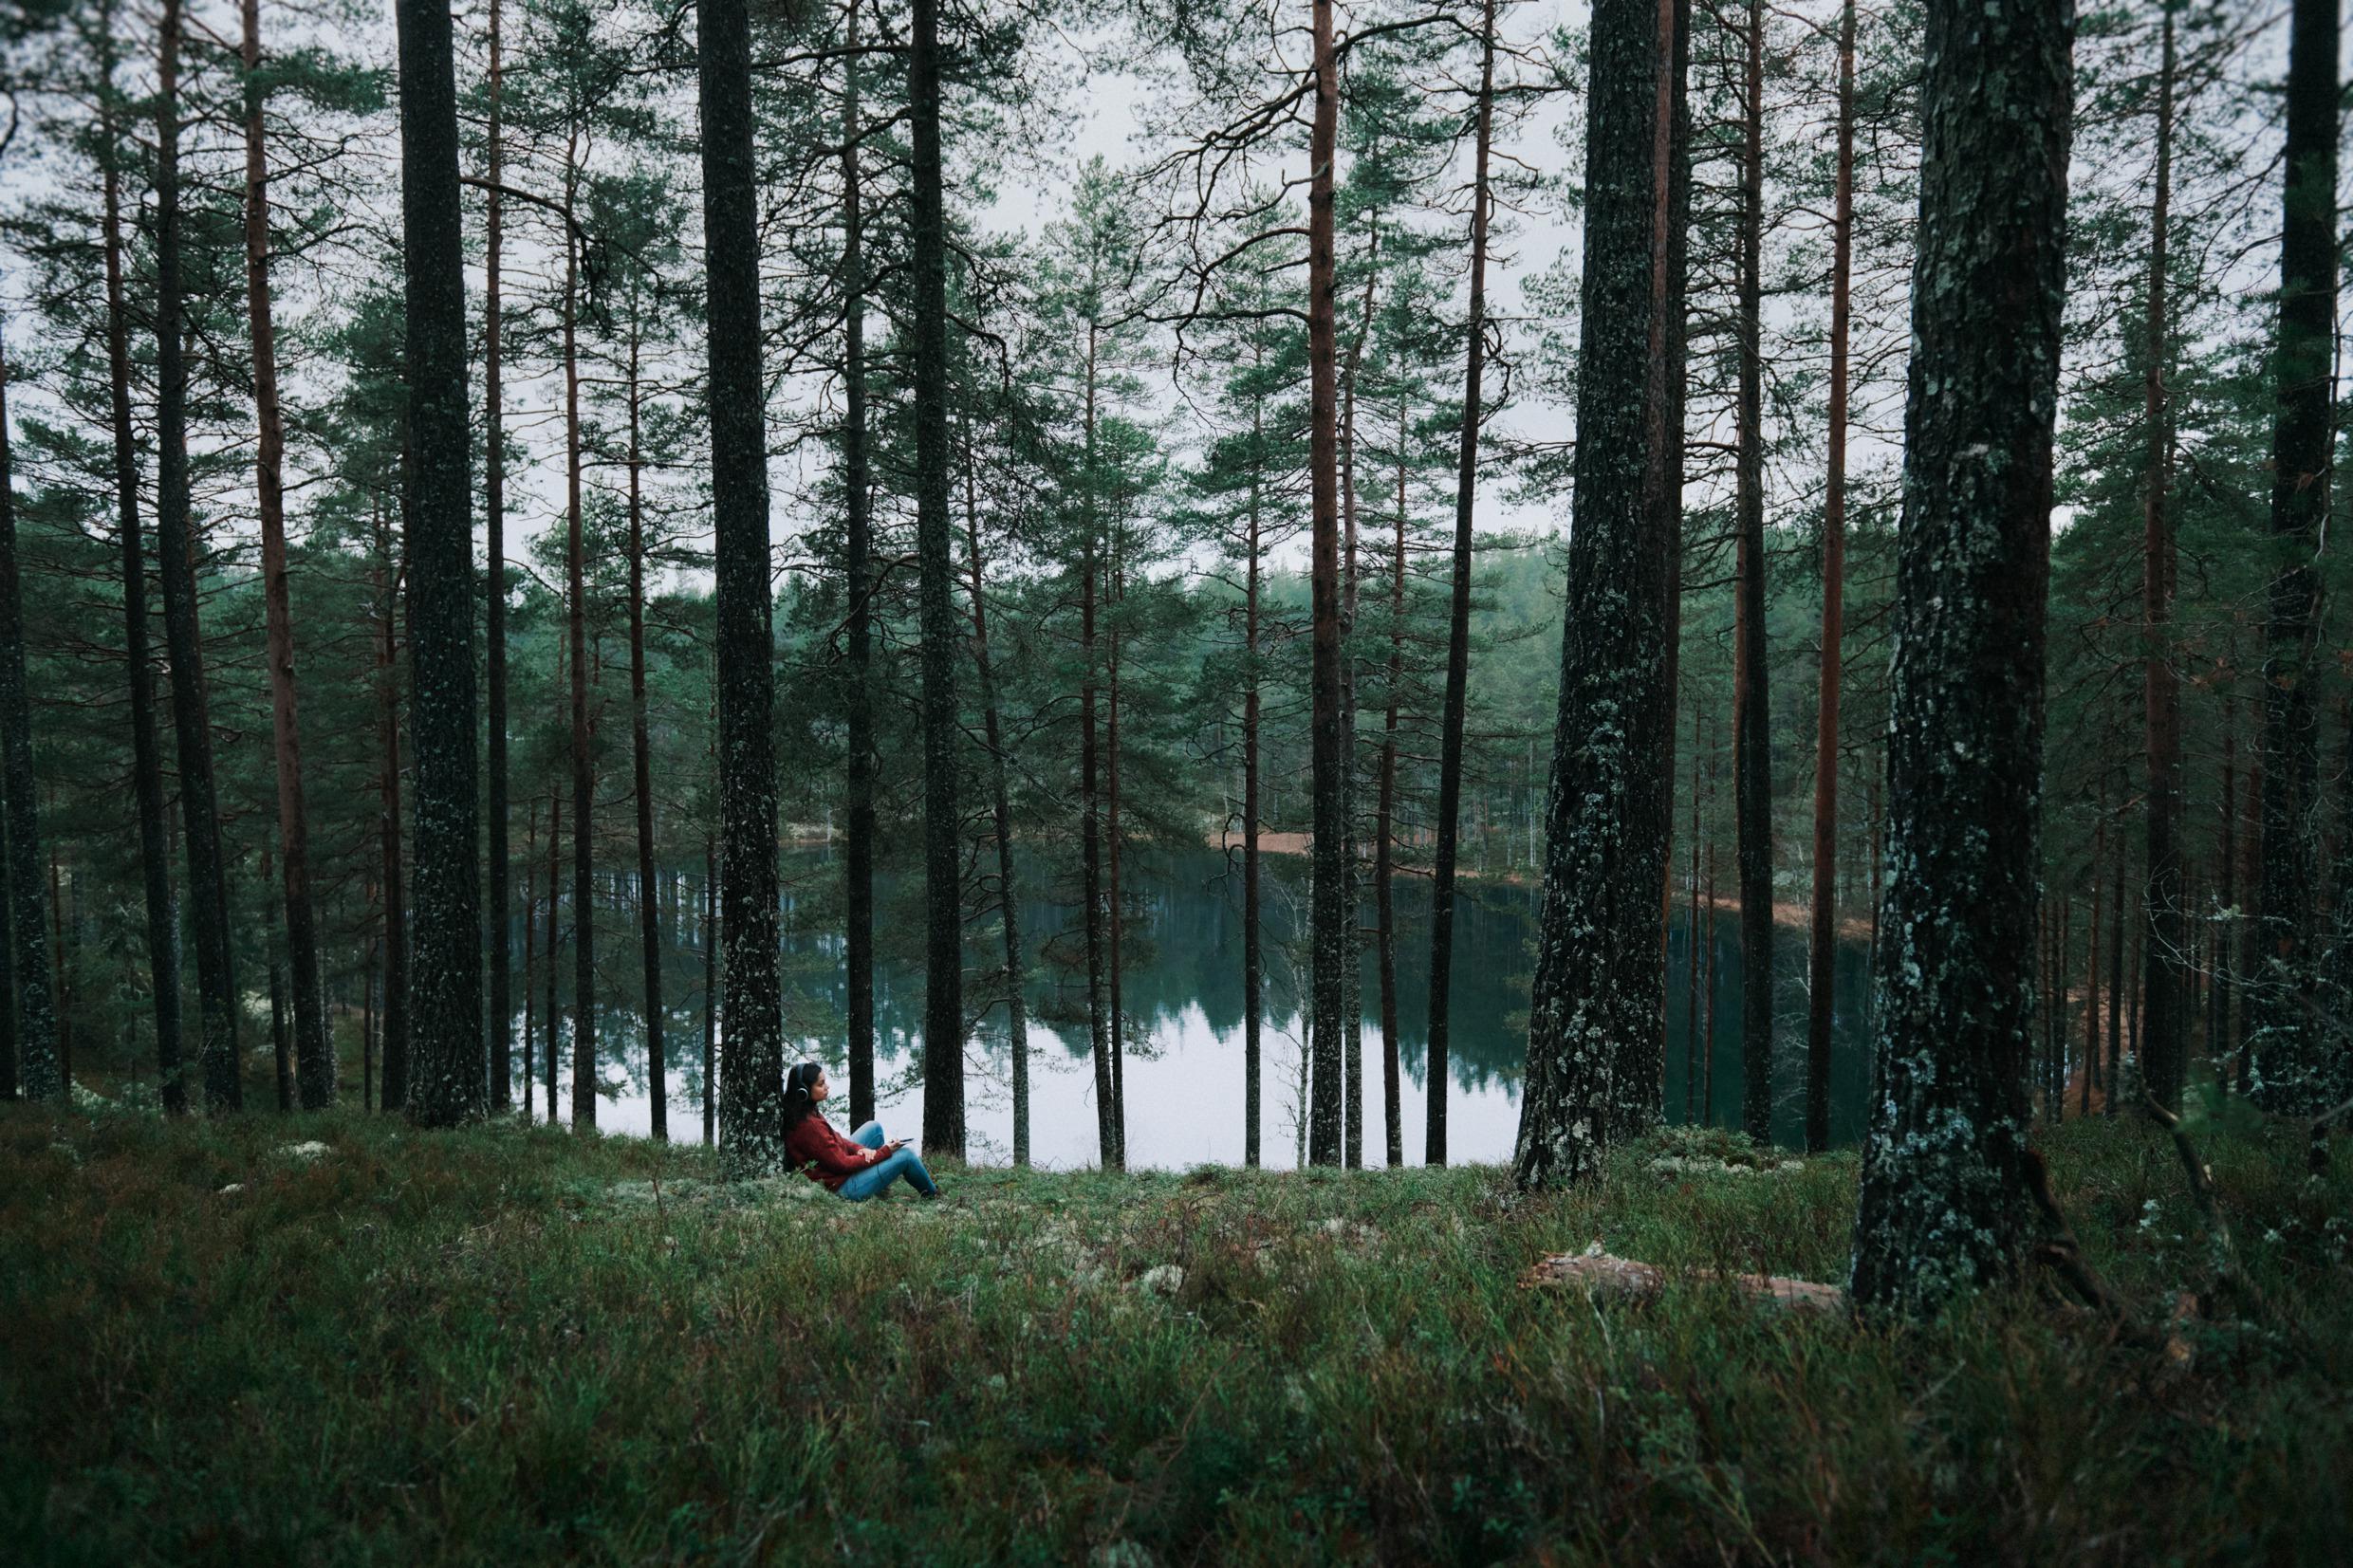 En person omgiven av höga träd sitter lutad mot ett, nära en liten sjö eller damm.